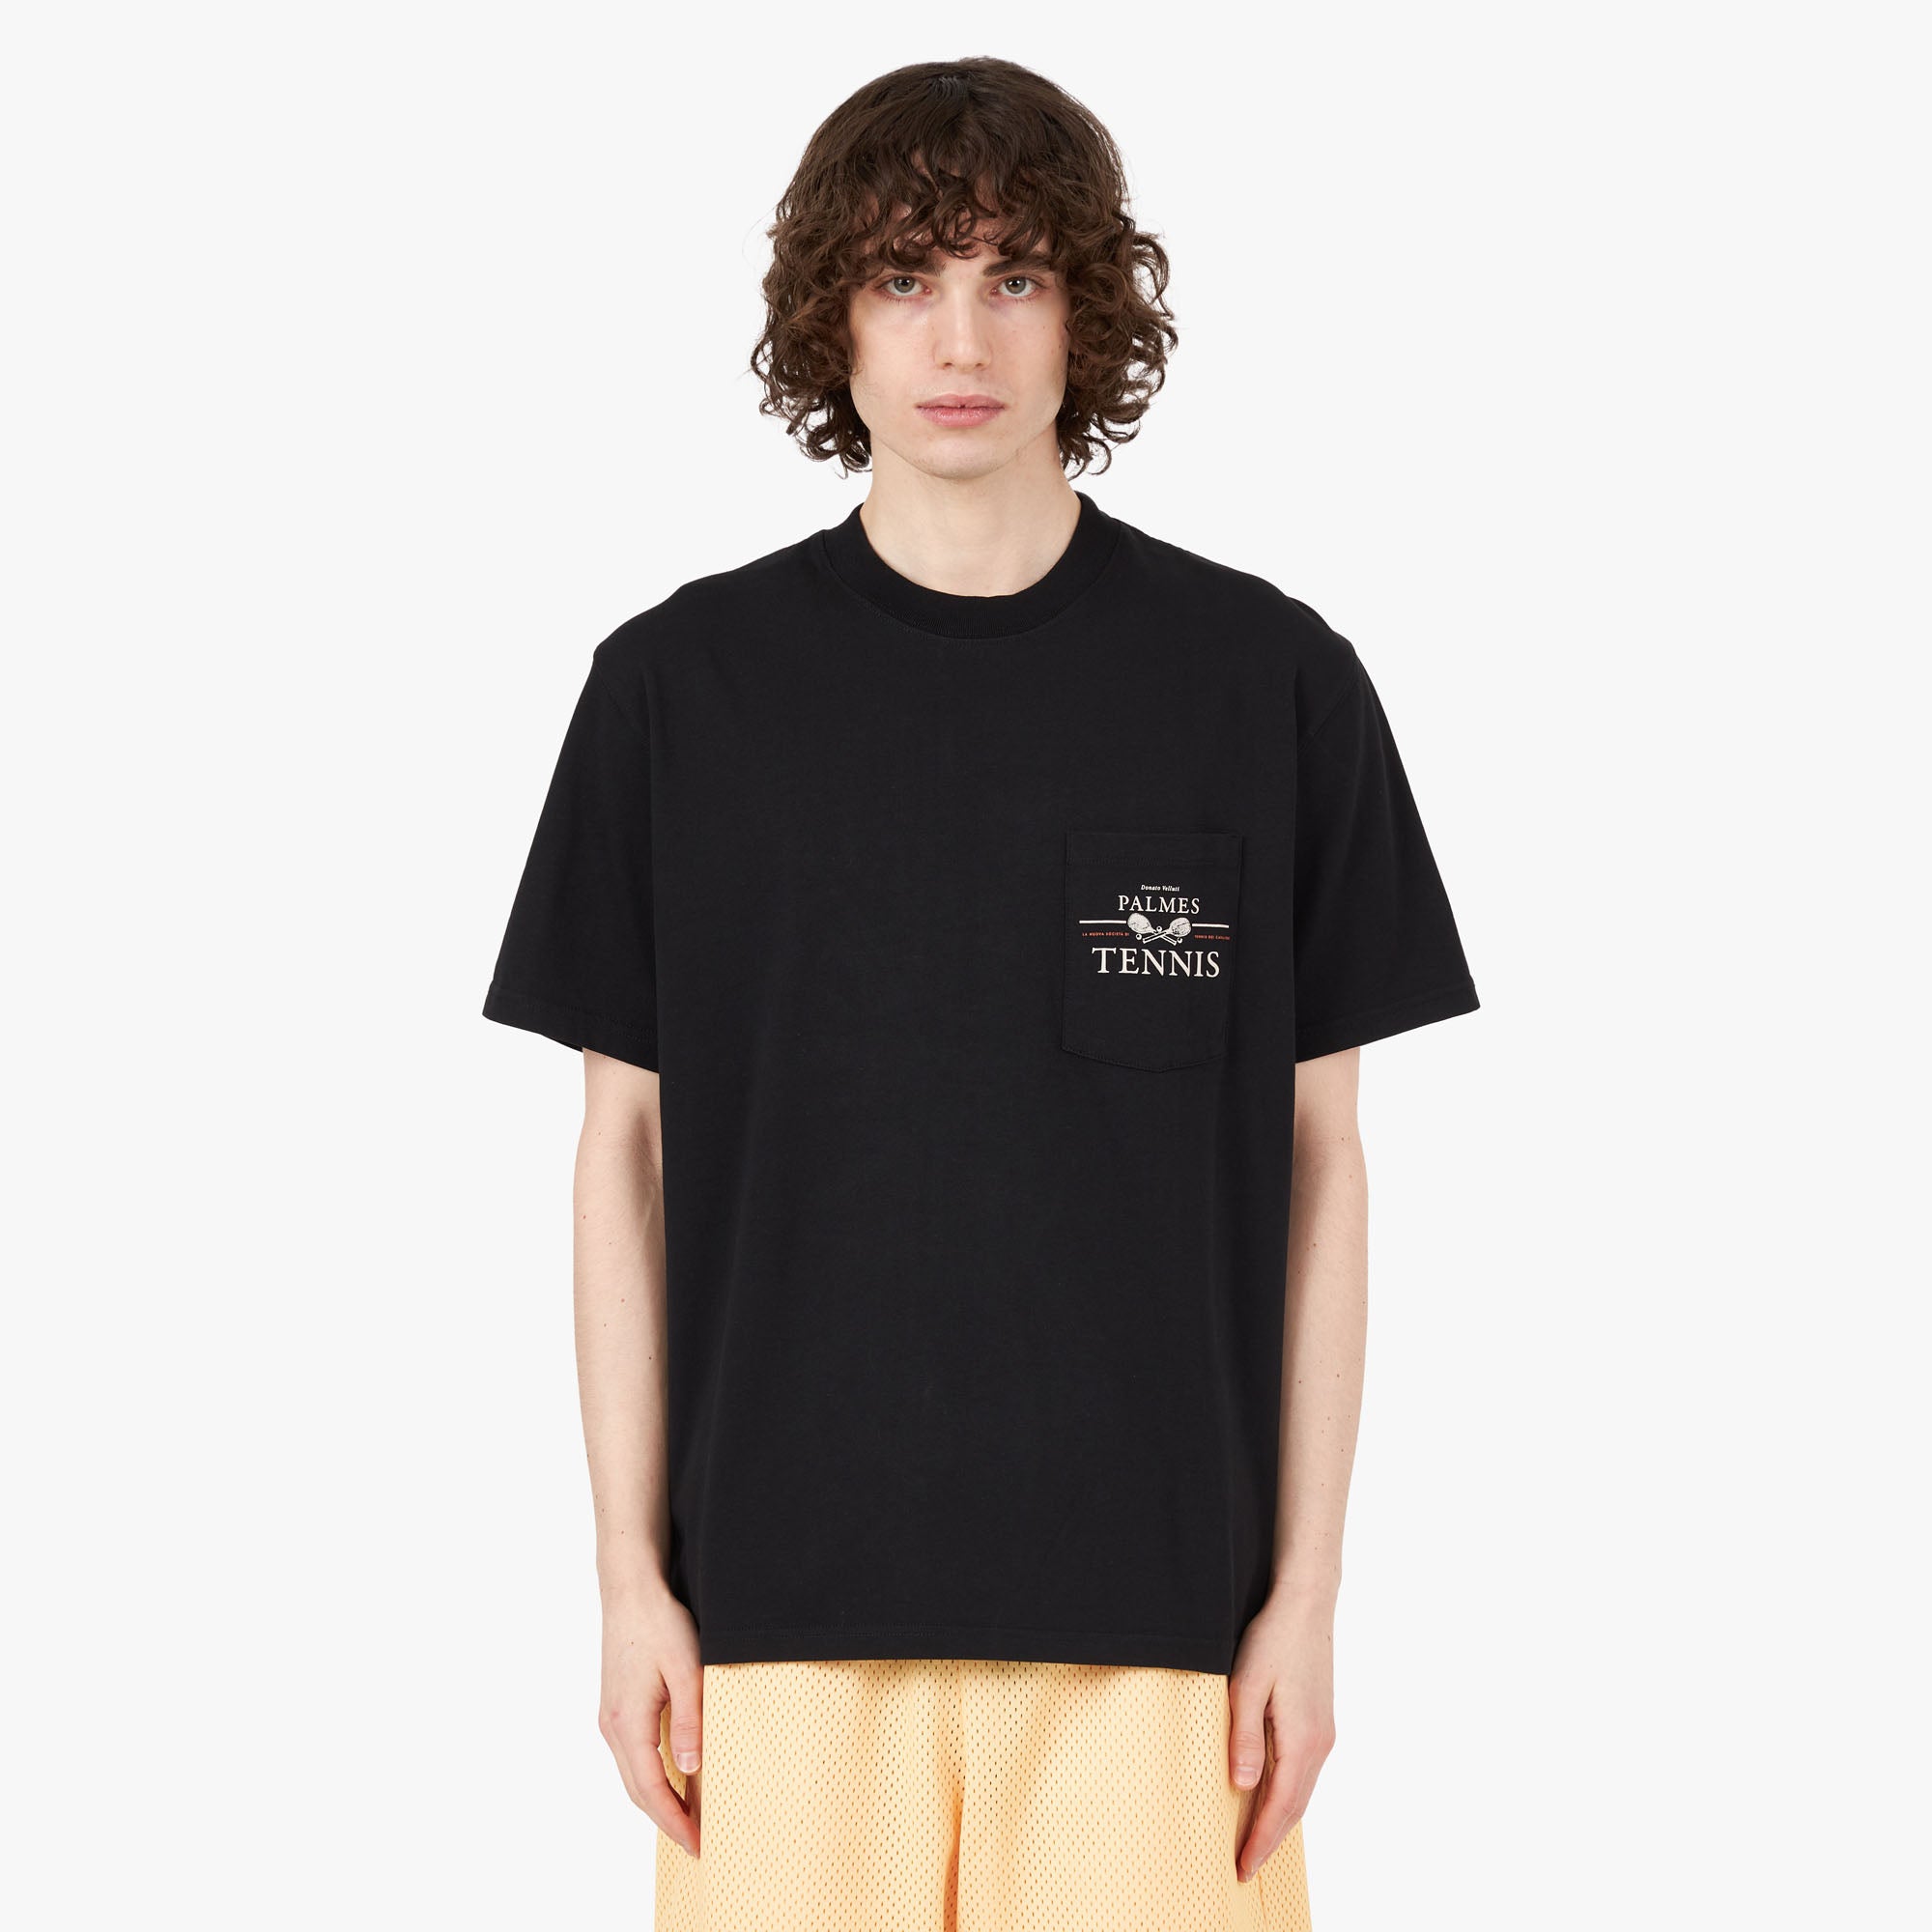 Palmes Vichi Pocket T-shirt / Black 1